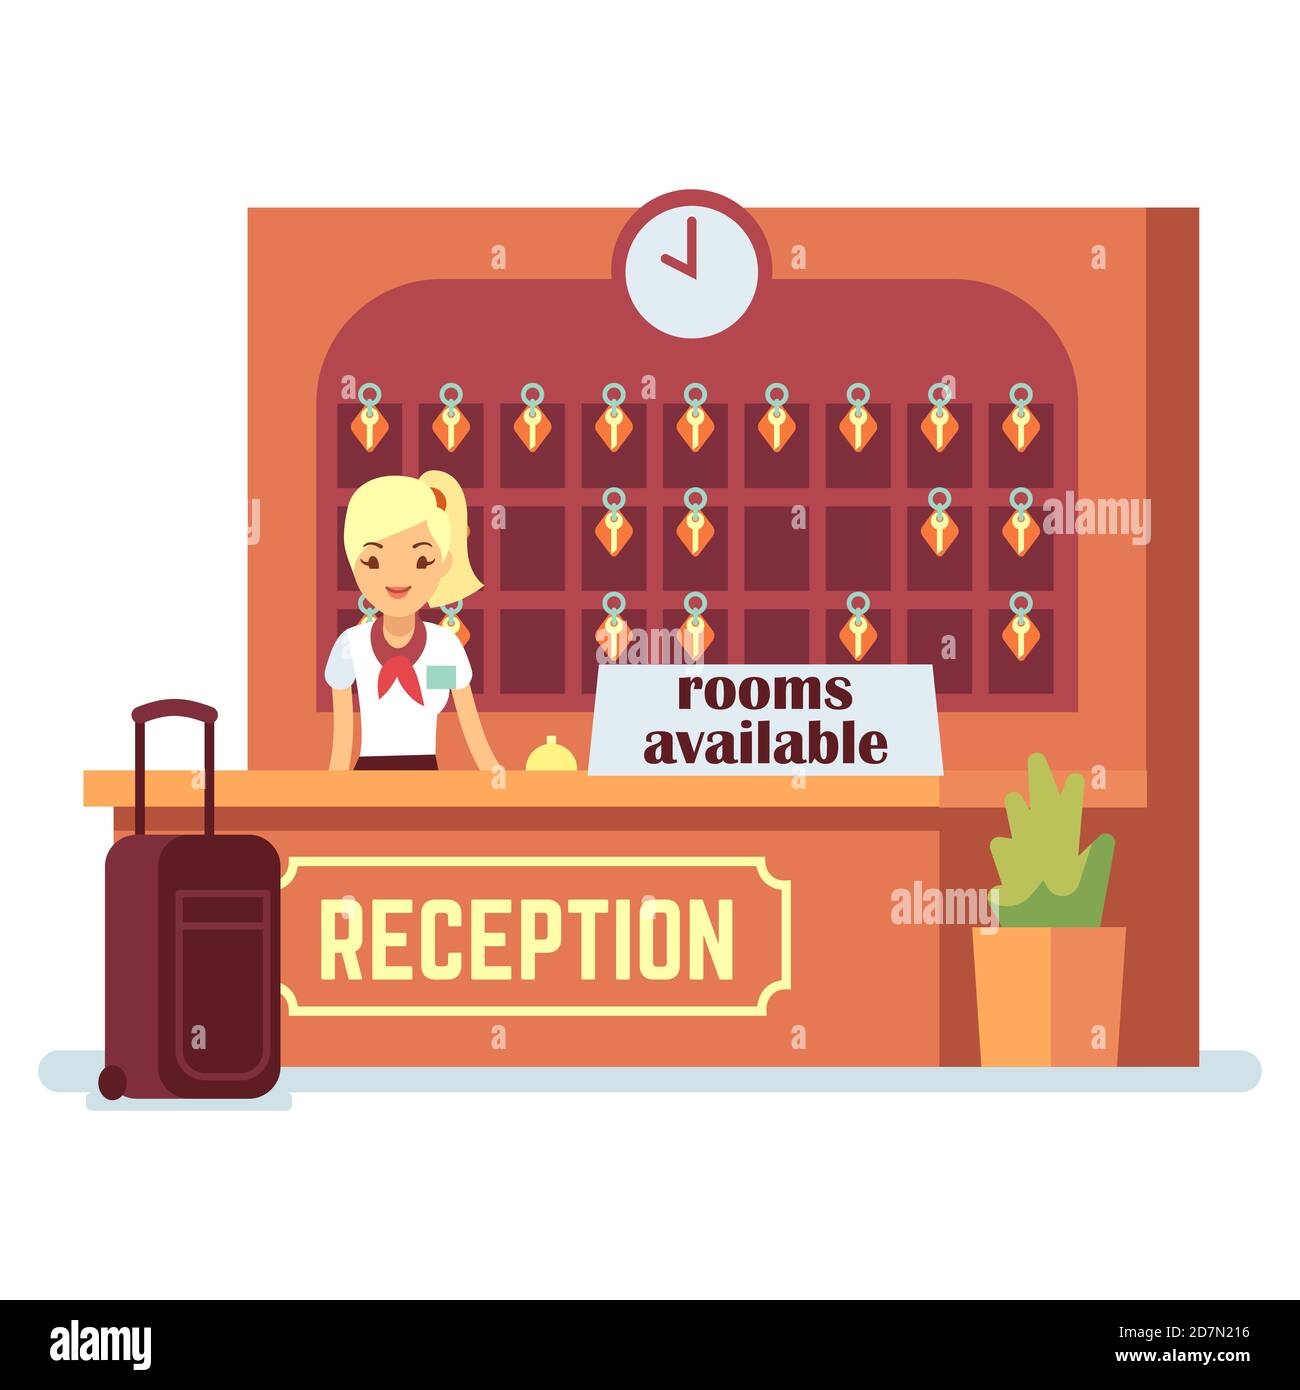 Vektorgrafik Zimmer verfügbar. Cartoon Figur Mädchen und Check-in-Schalter im Hotel oder Hostel. Zimmer an der Rezeption verfügbar Stock Vektor